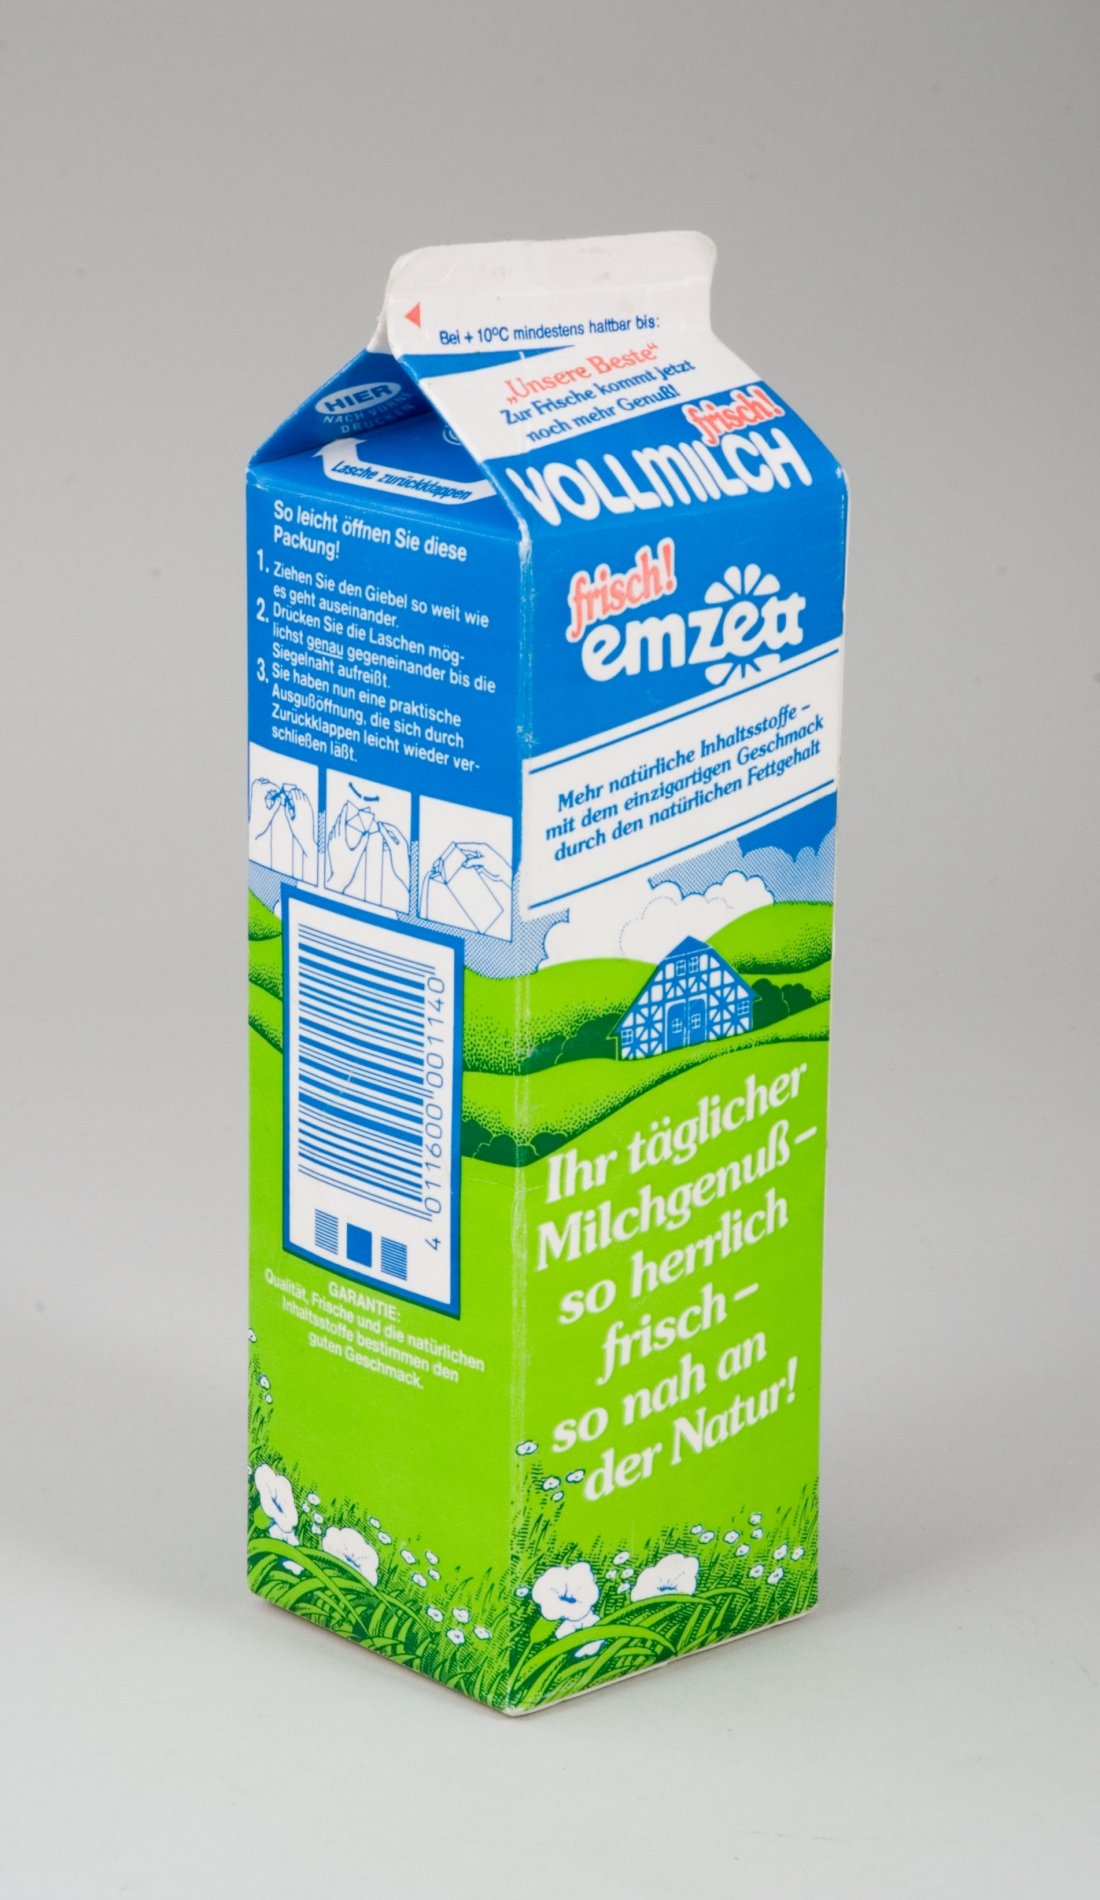 Milchpackung "emzett" (Stiftung Domäne Dahlem - Landgut und Museum, Weiternutzung nur mit Genehmigung des Museums CC BY-NC-SA)